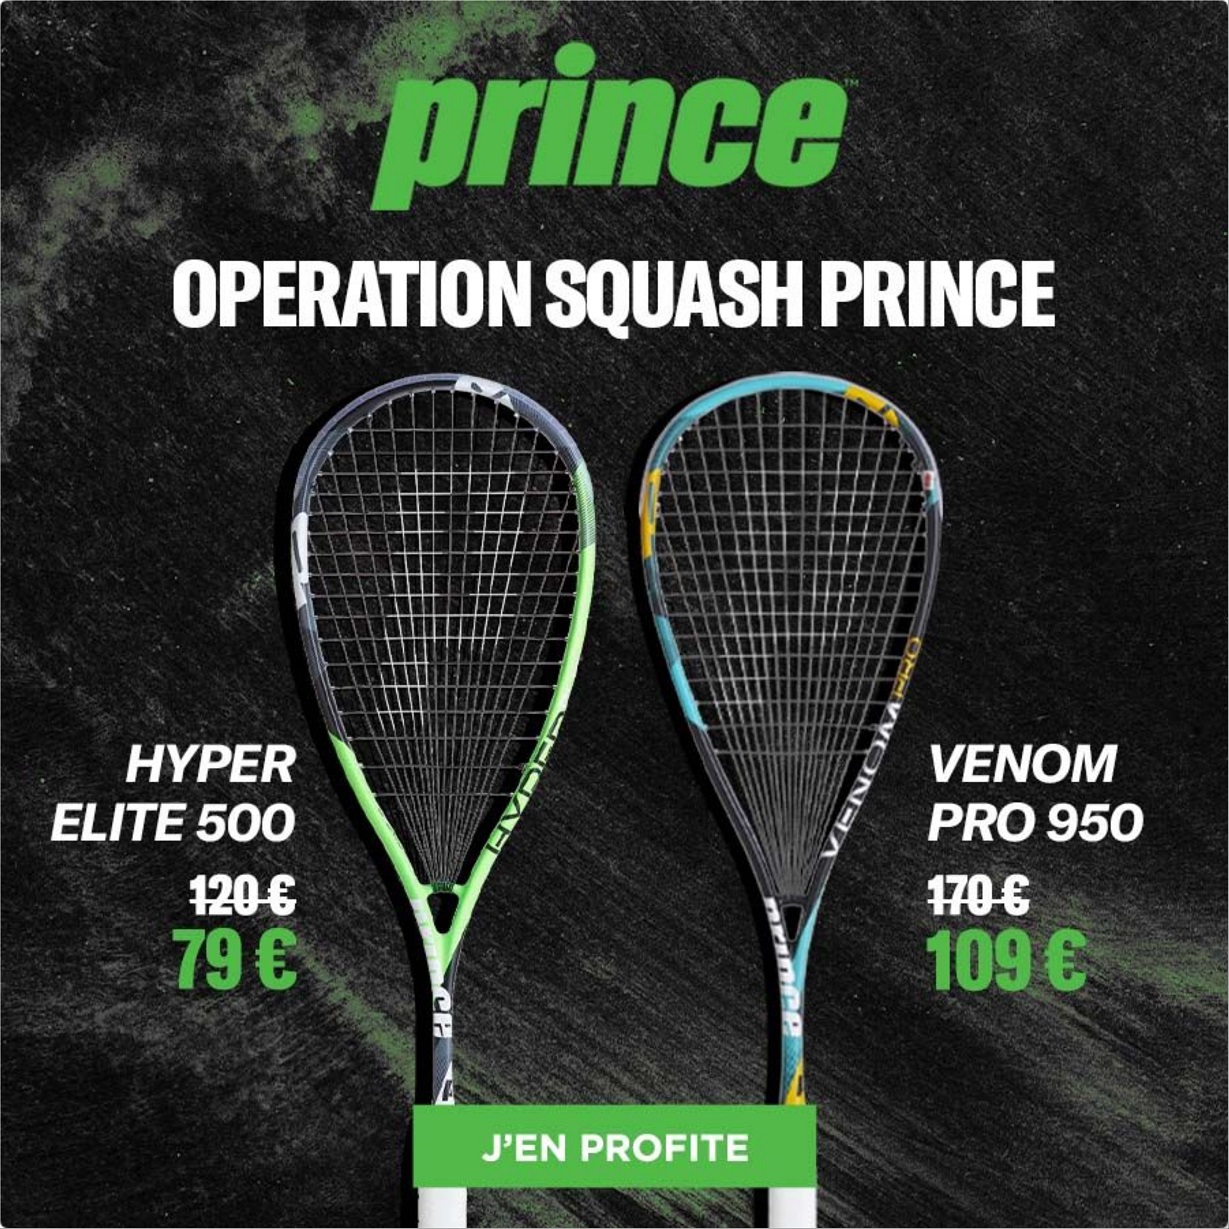 Offre exceptionnelle sur les raquettes de Squash Prince - Protennis